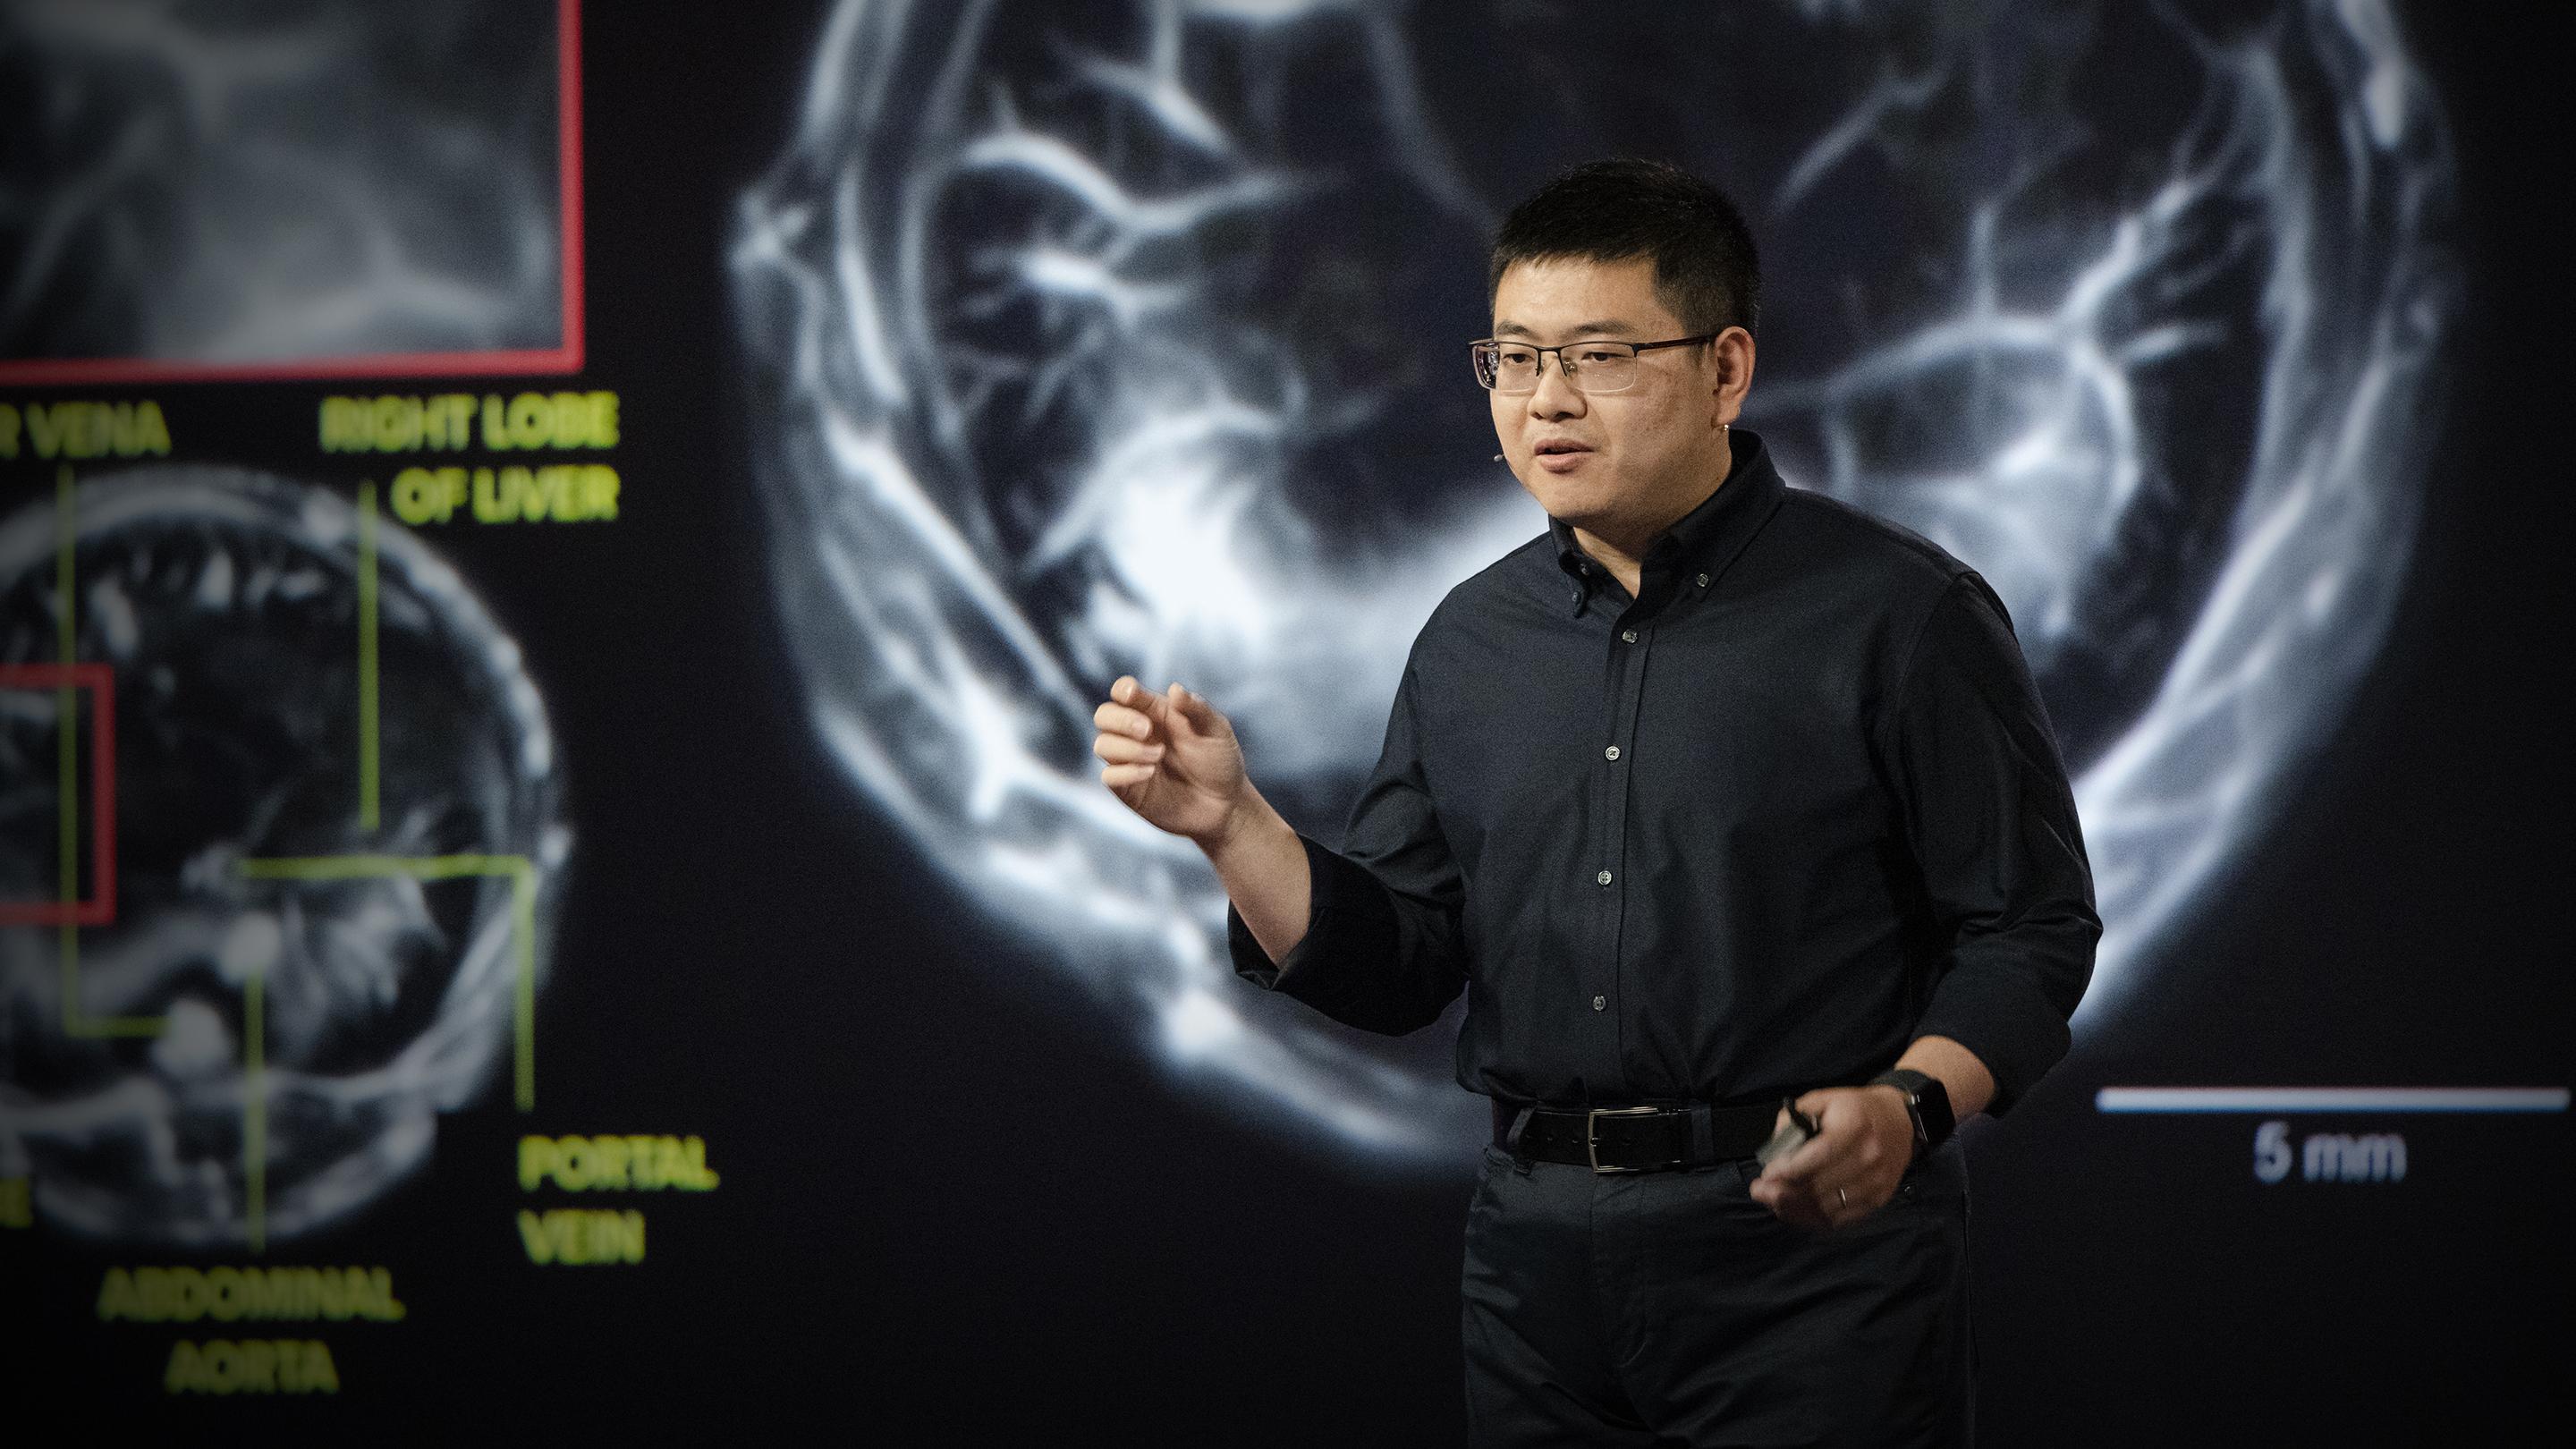 L'incroyable potentiel de l'imagerie photo-acoustique pour détecter le cancer | Lei Li